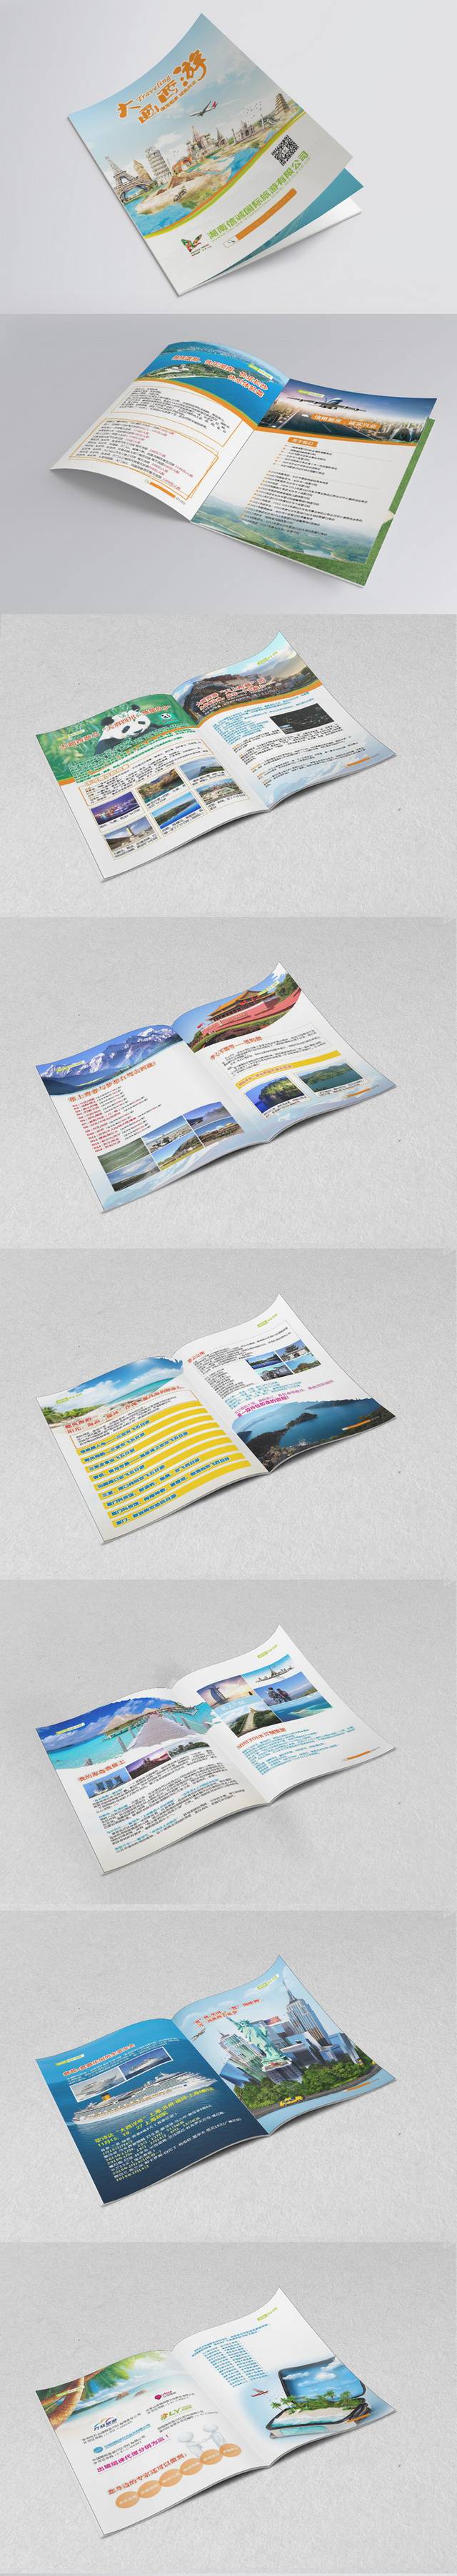 旅游宣传画册设计